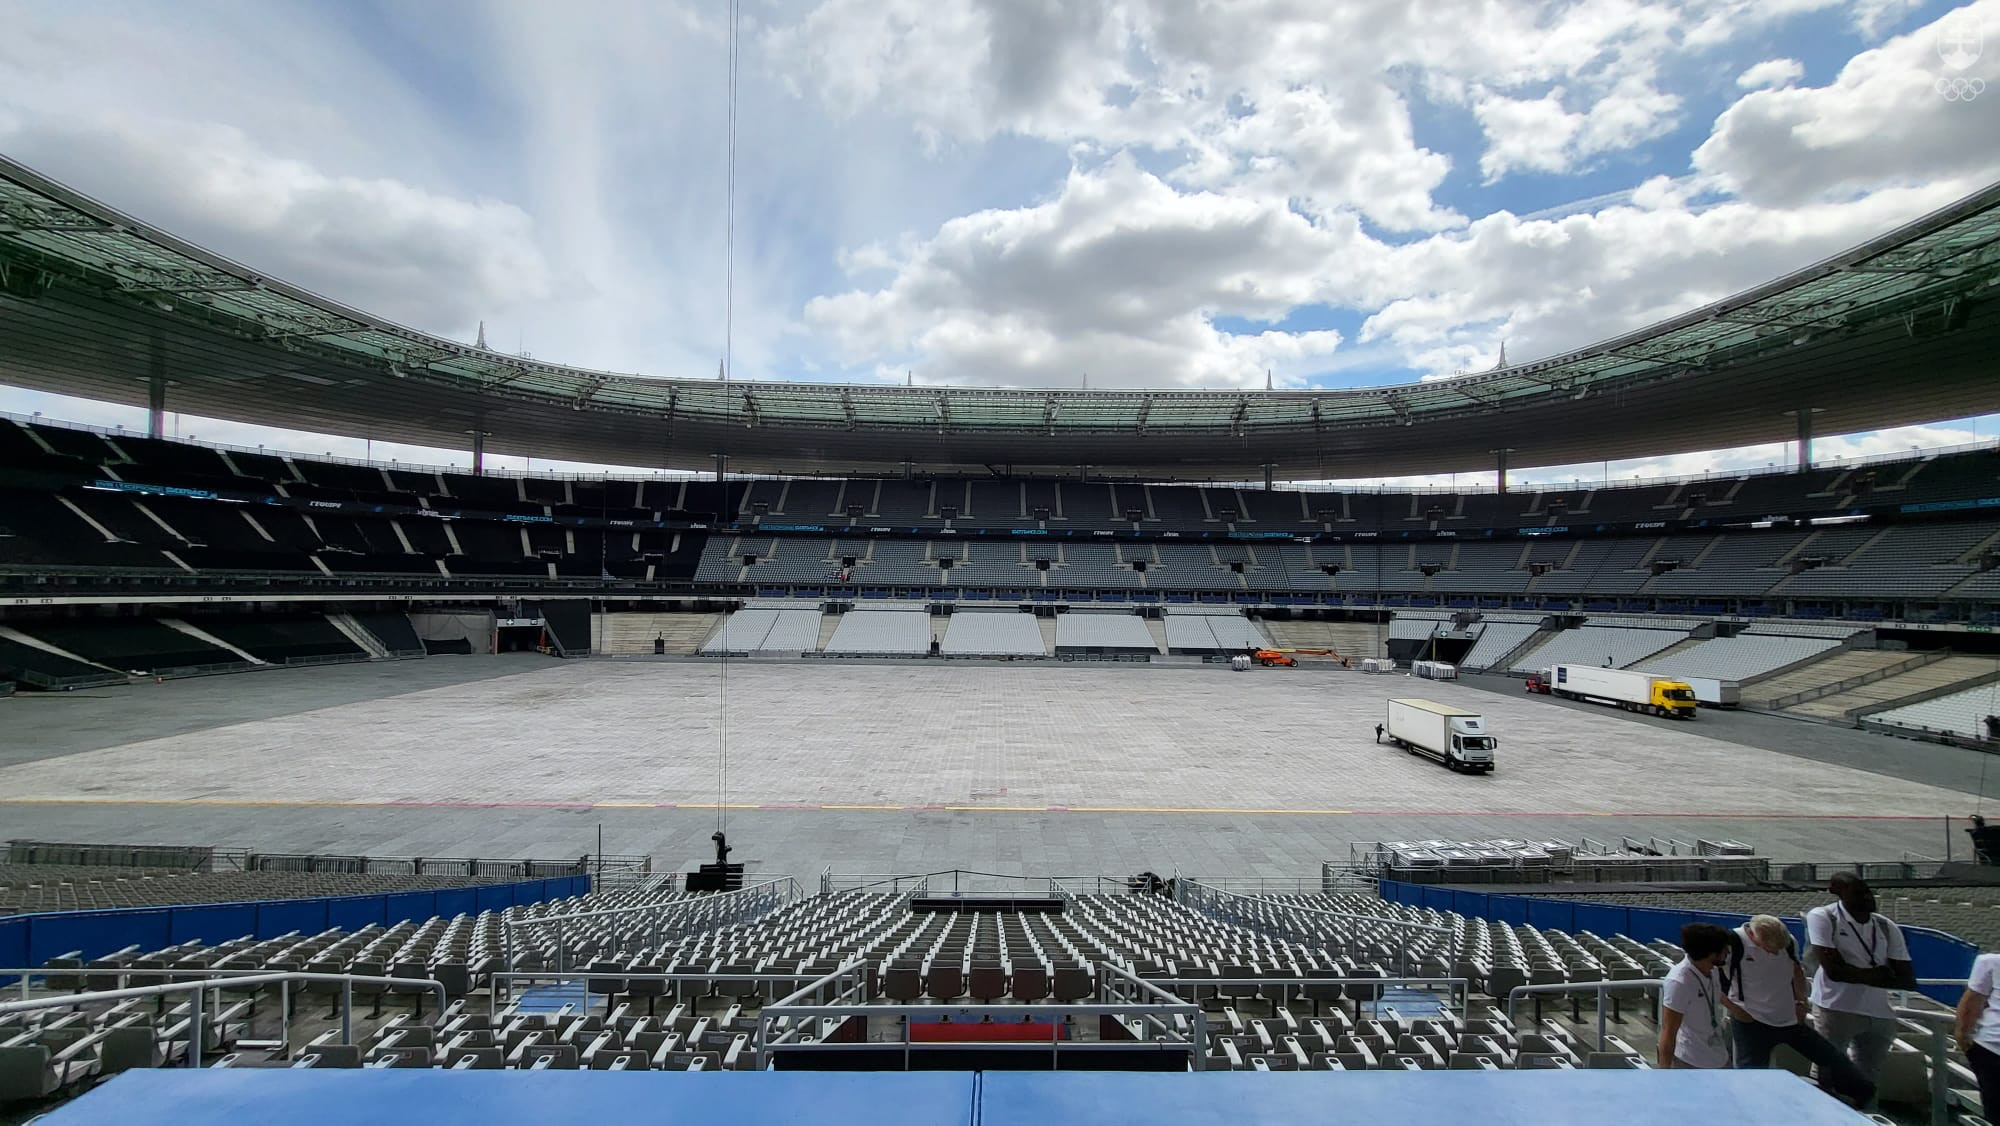 Slávny futbalový stánok Stade de France počas návštevy účastníkov seminára chystali na koncert rockovej skupiny Rammstein.